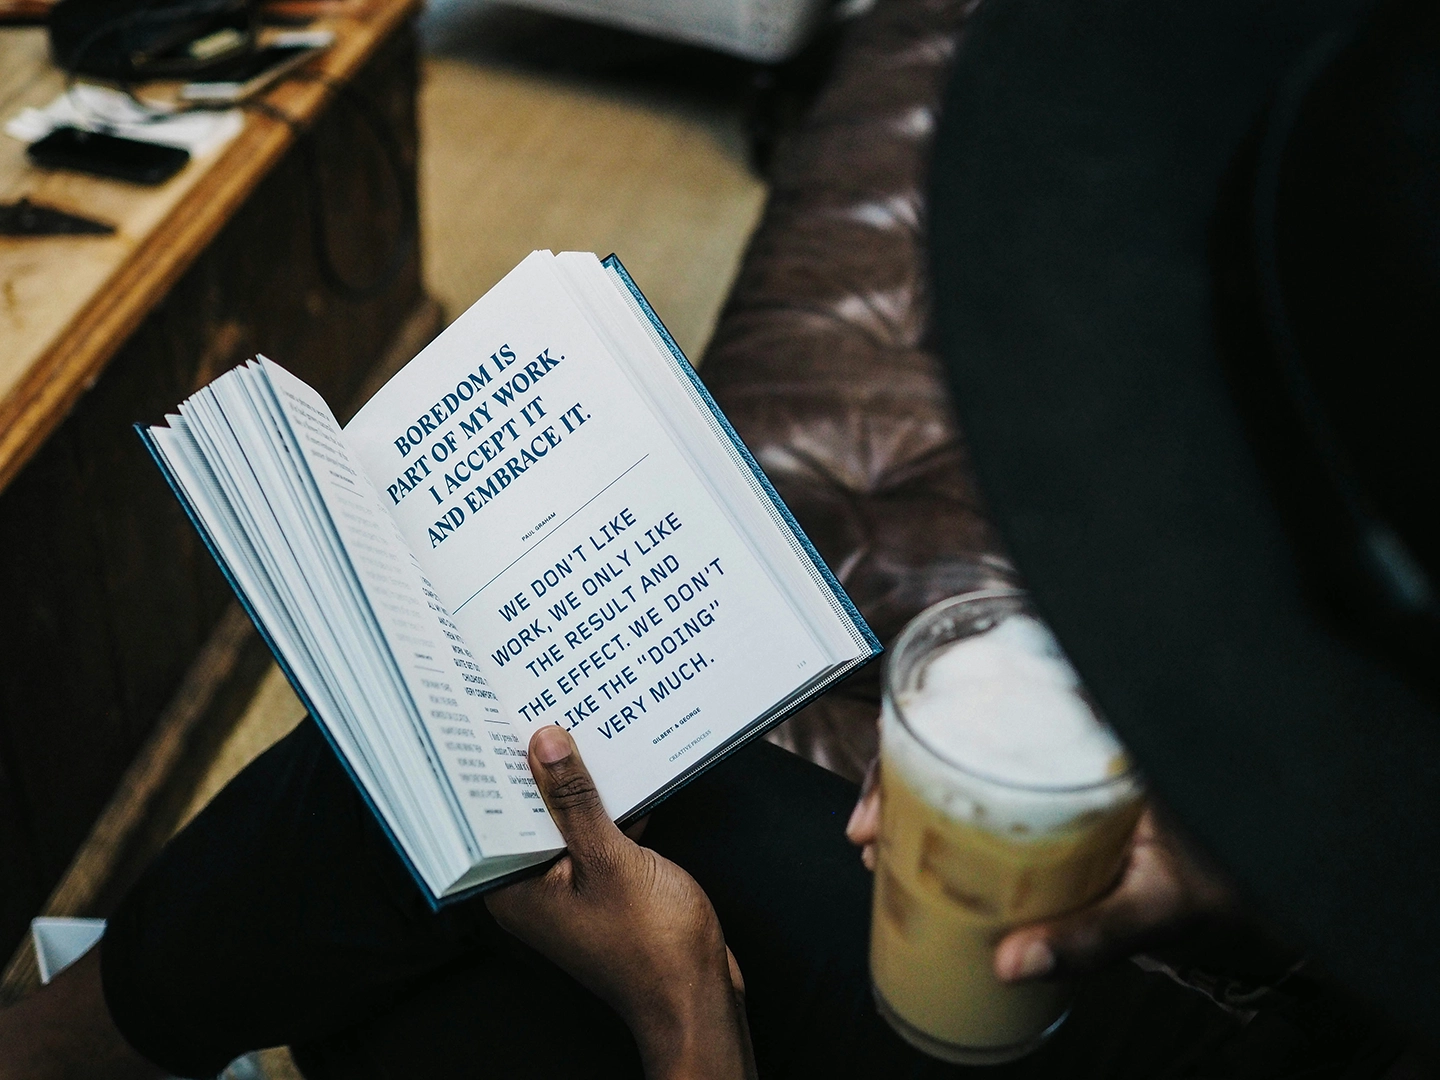 Eine Person liest ein Buch mit sichtbarem Text über Langeweile als Teil der Arbeit, während sie ein Glas mit einem cremigen Getränk hält.